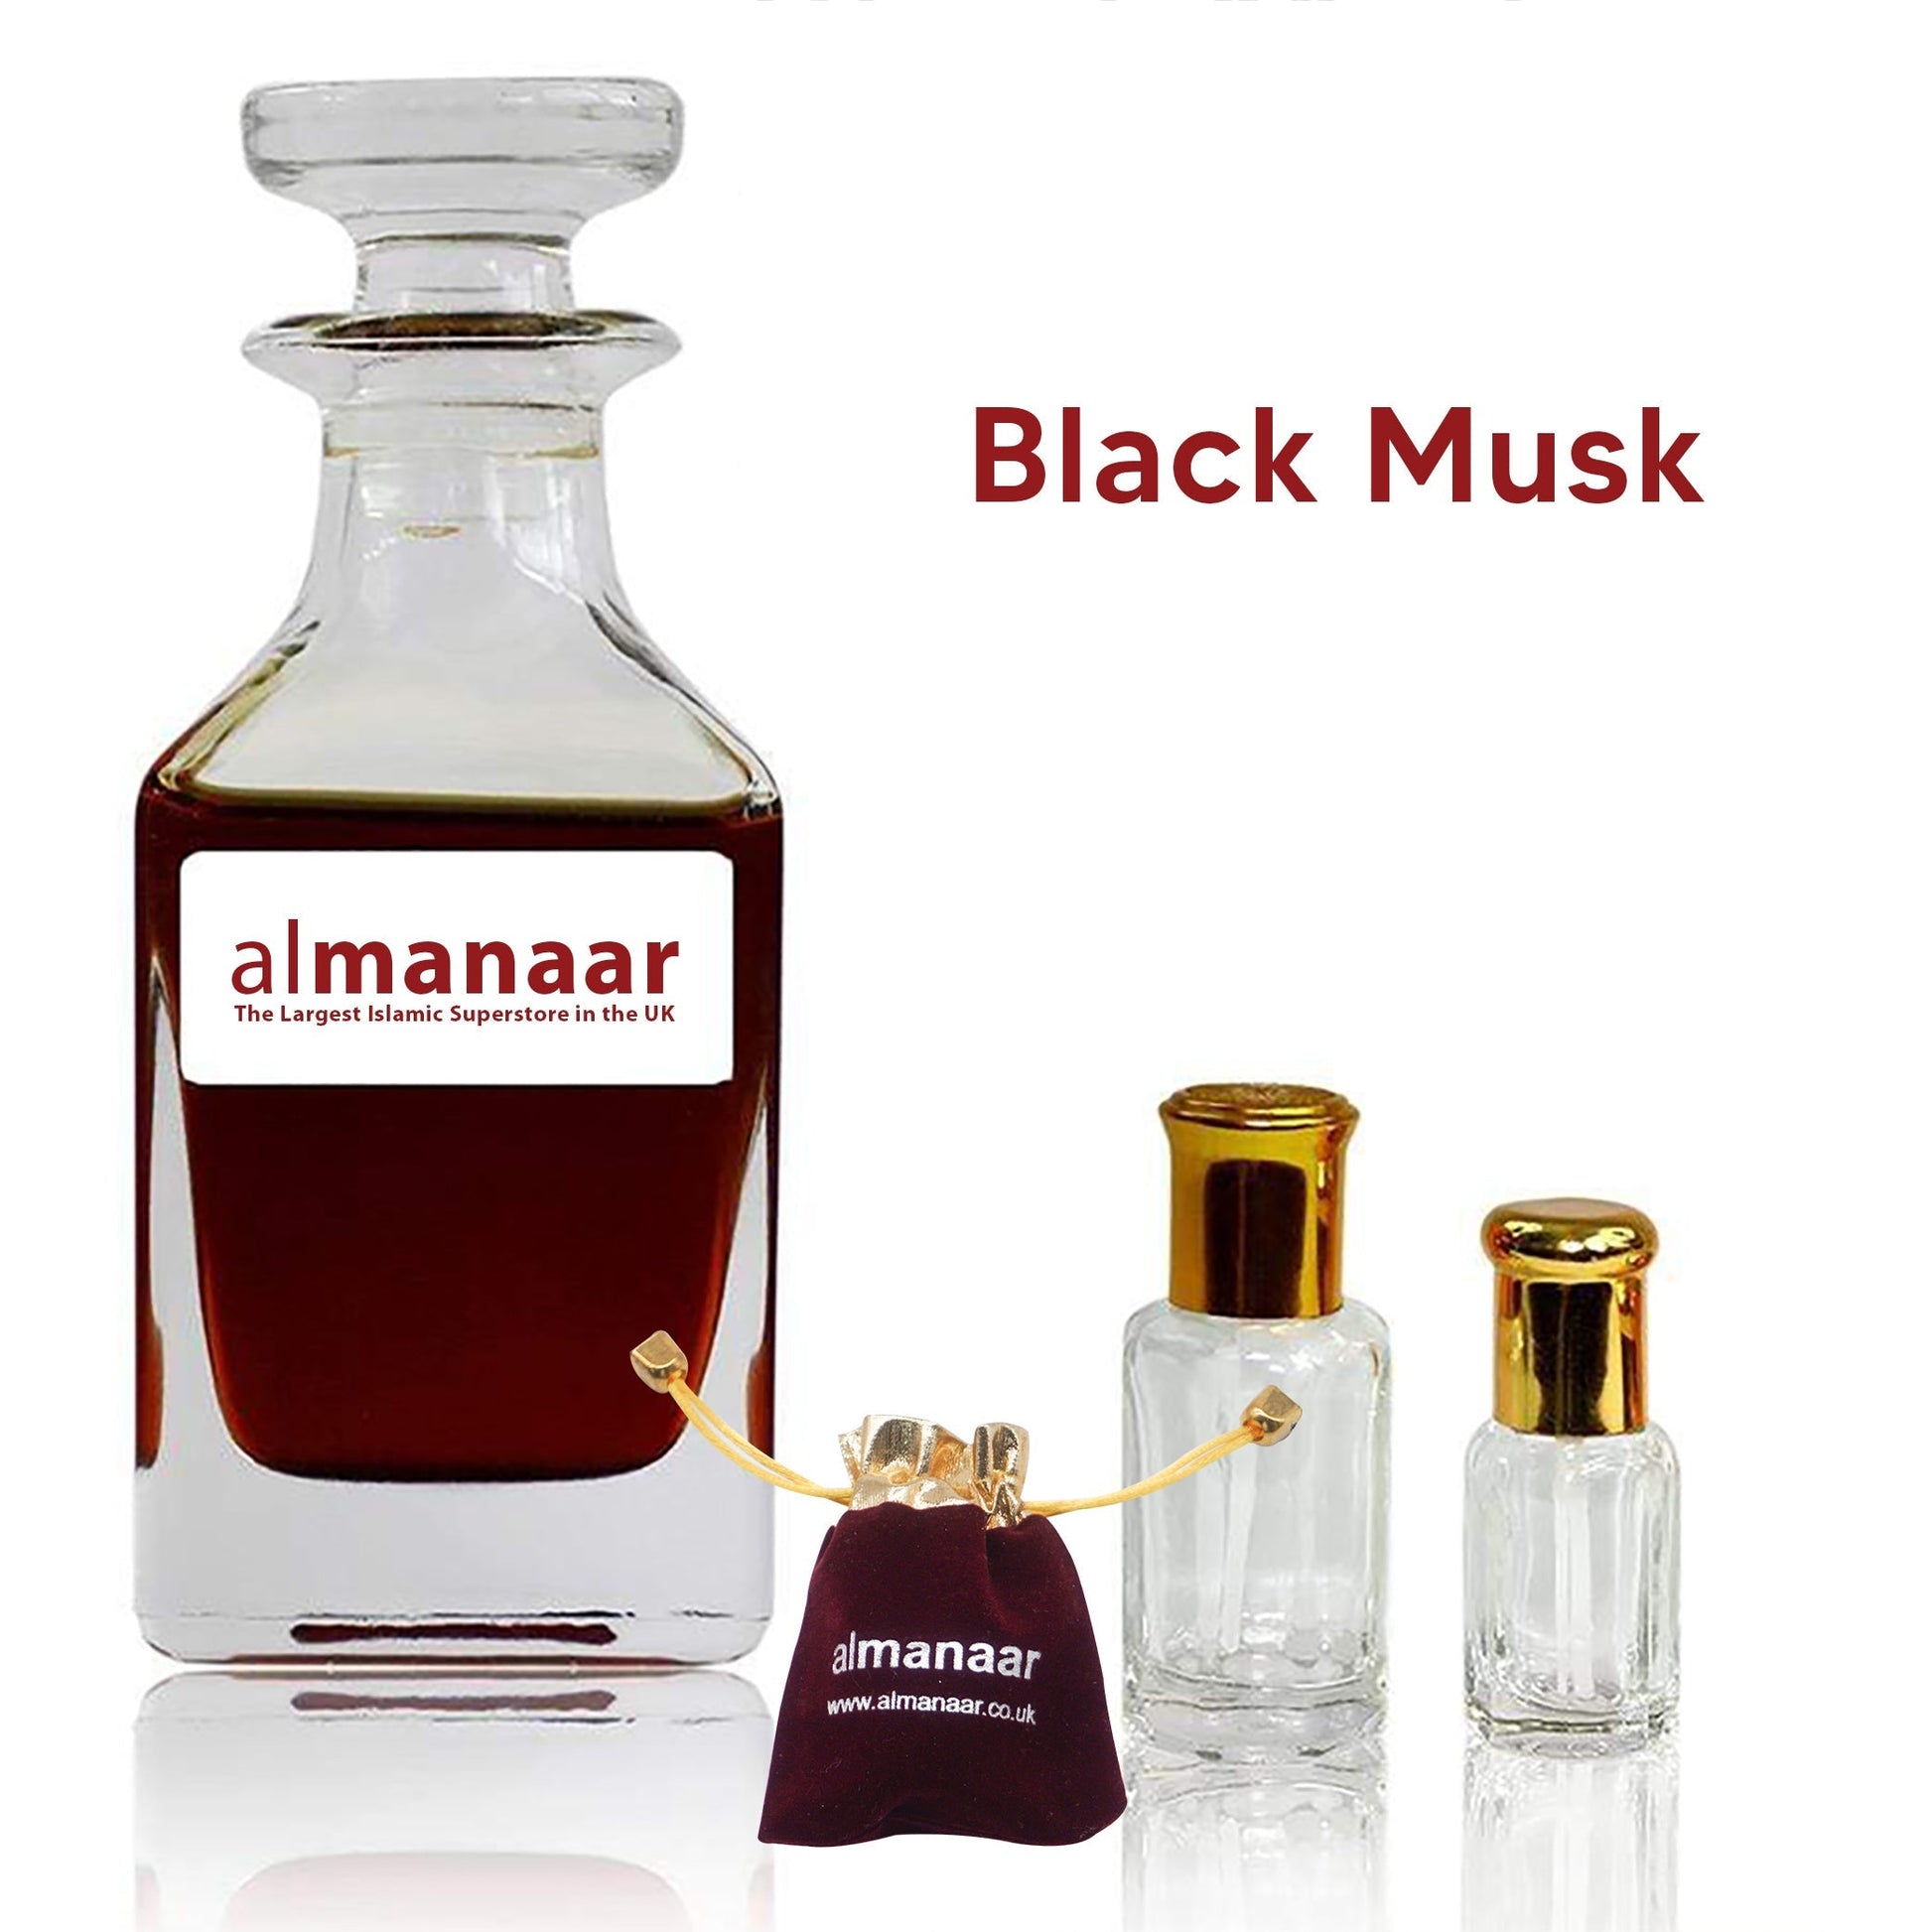 Black Musk - Concentrated Perfume Oil by almanaar-almanaar Islamic Store